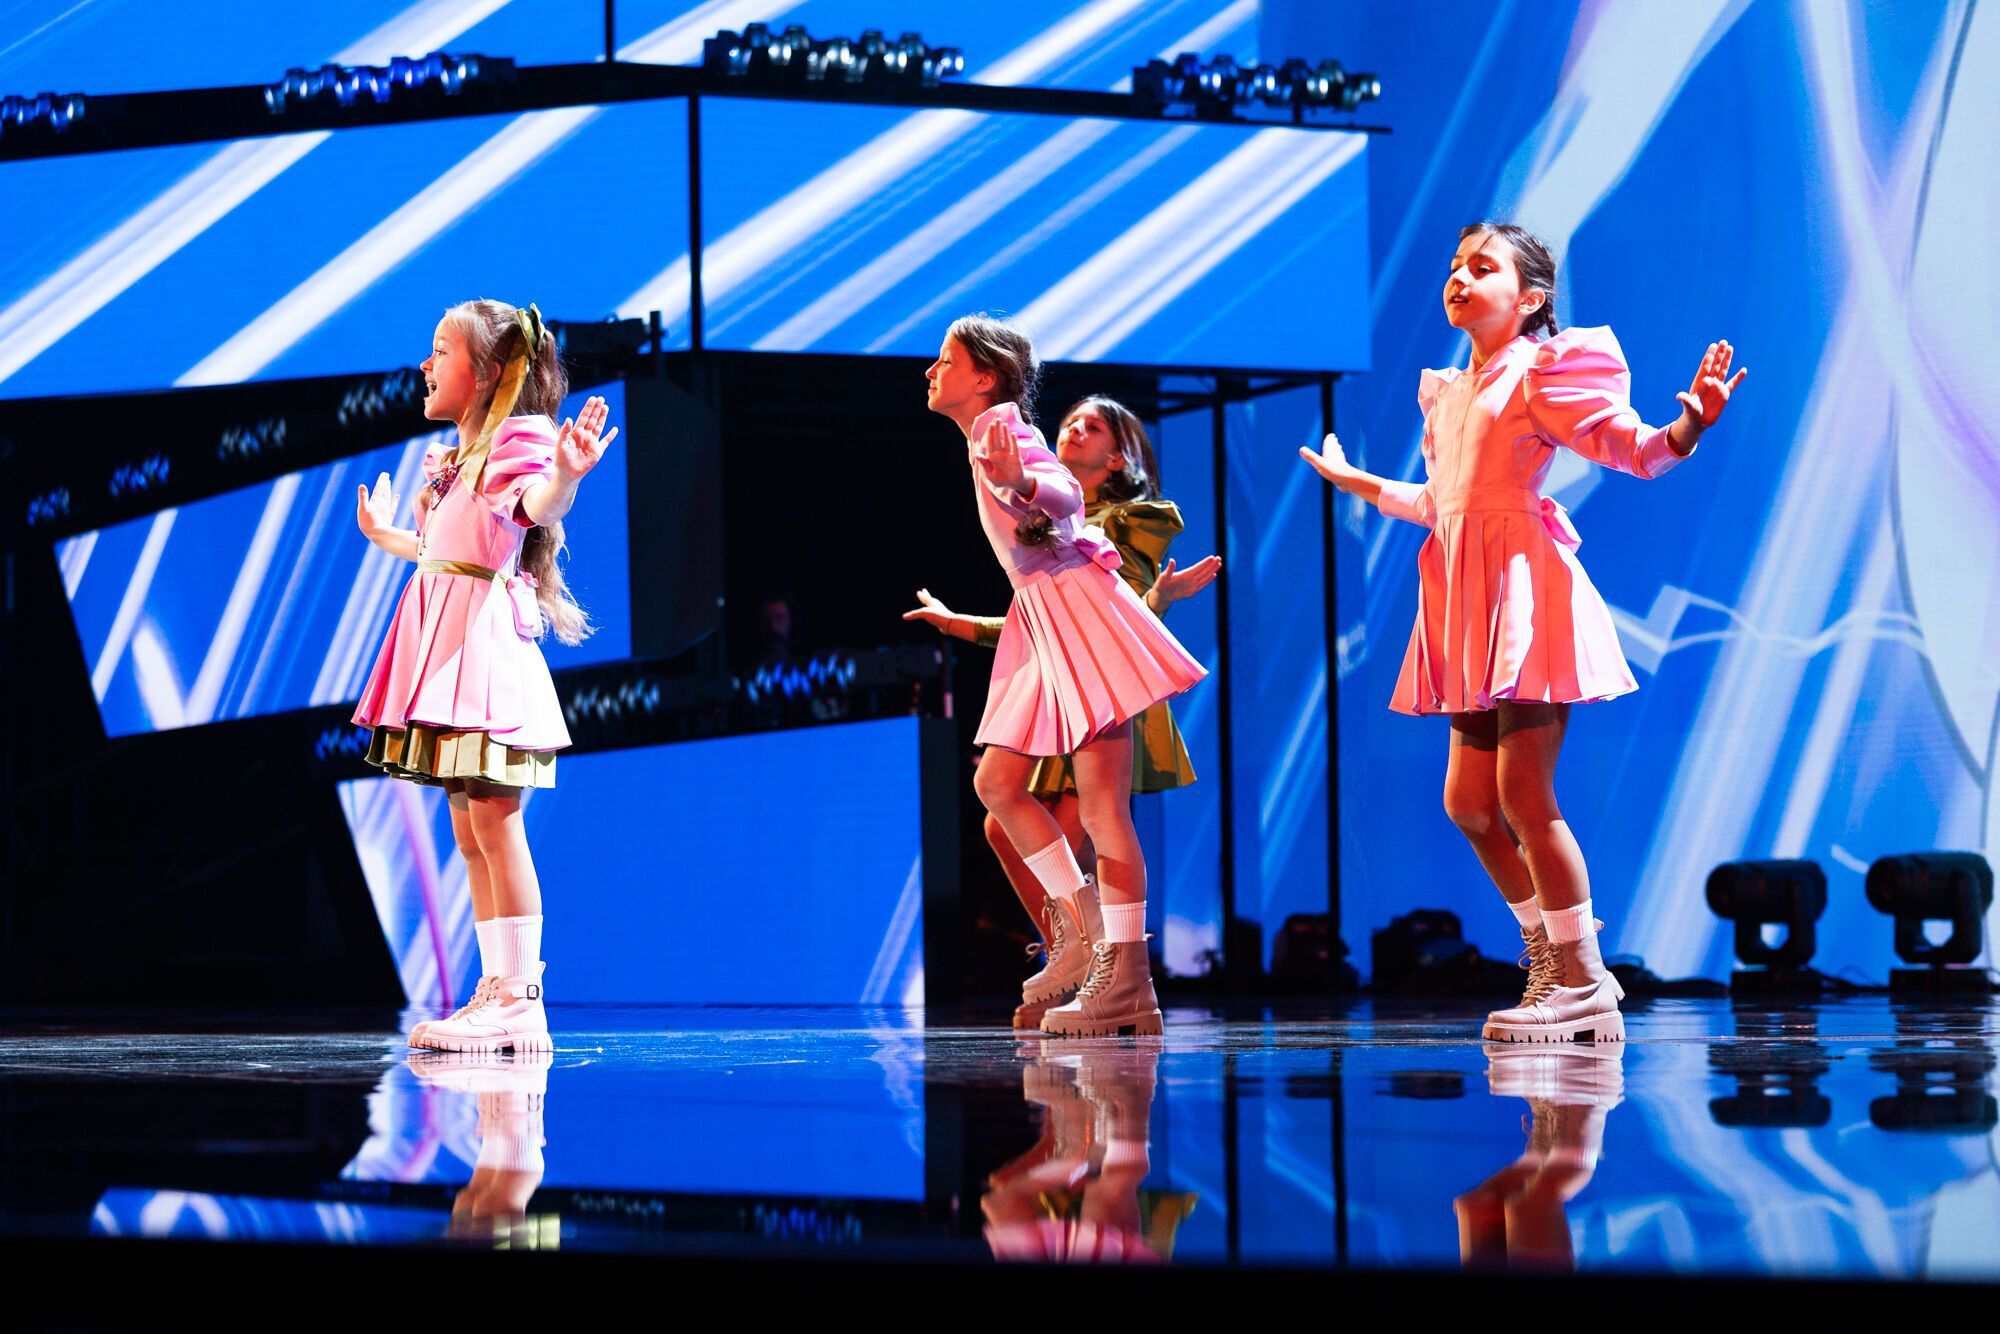 Анастасія Димид провела першу репетицію на сцені Дитячого Євробачення-2023 і вразила мережу. Про що пісня "Квітка"